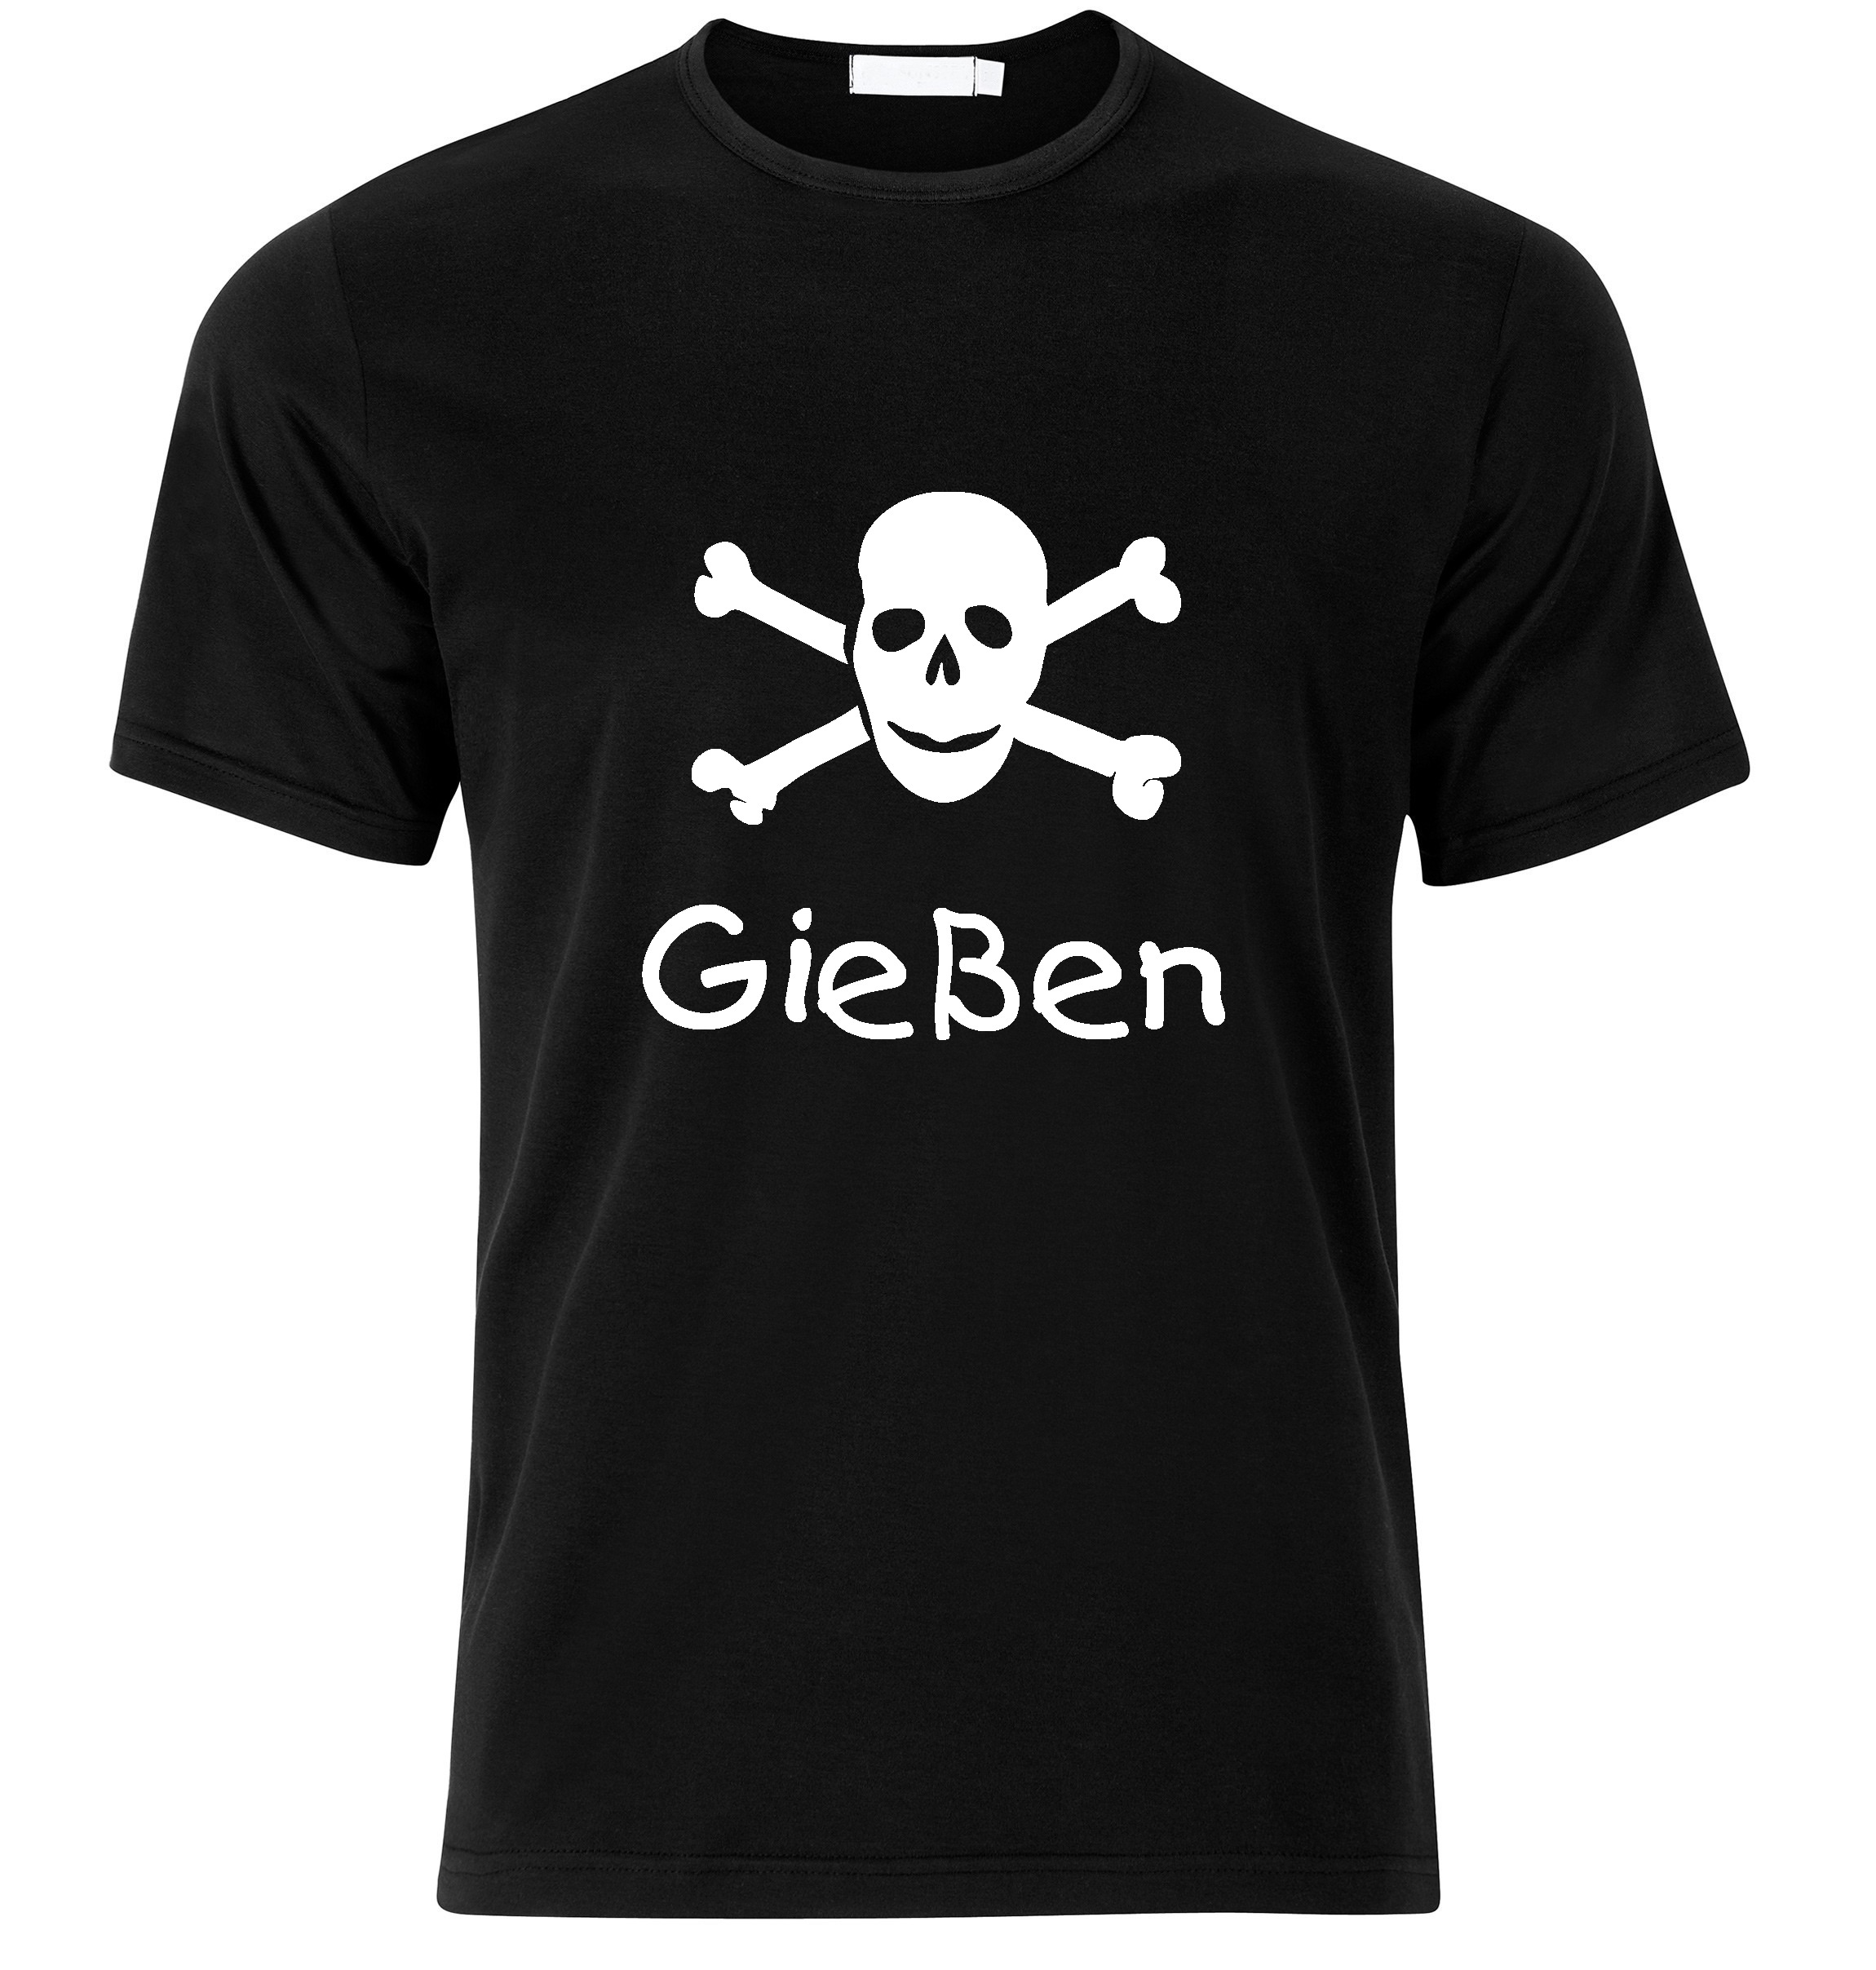 T-Shirt Gießen Jolly Roger, Totenkopf